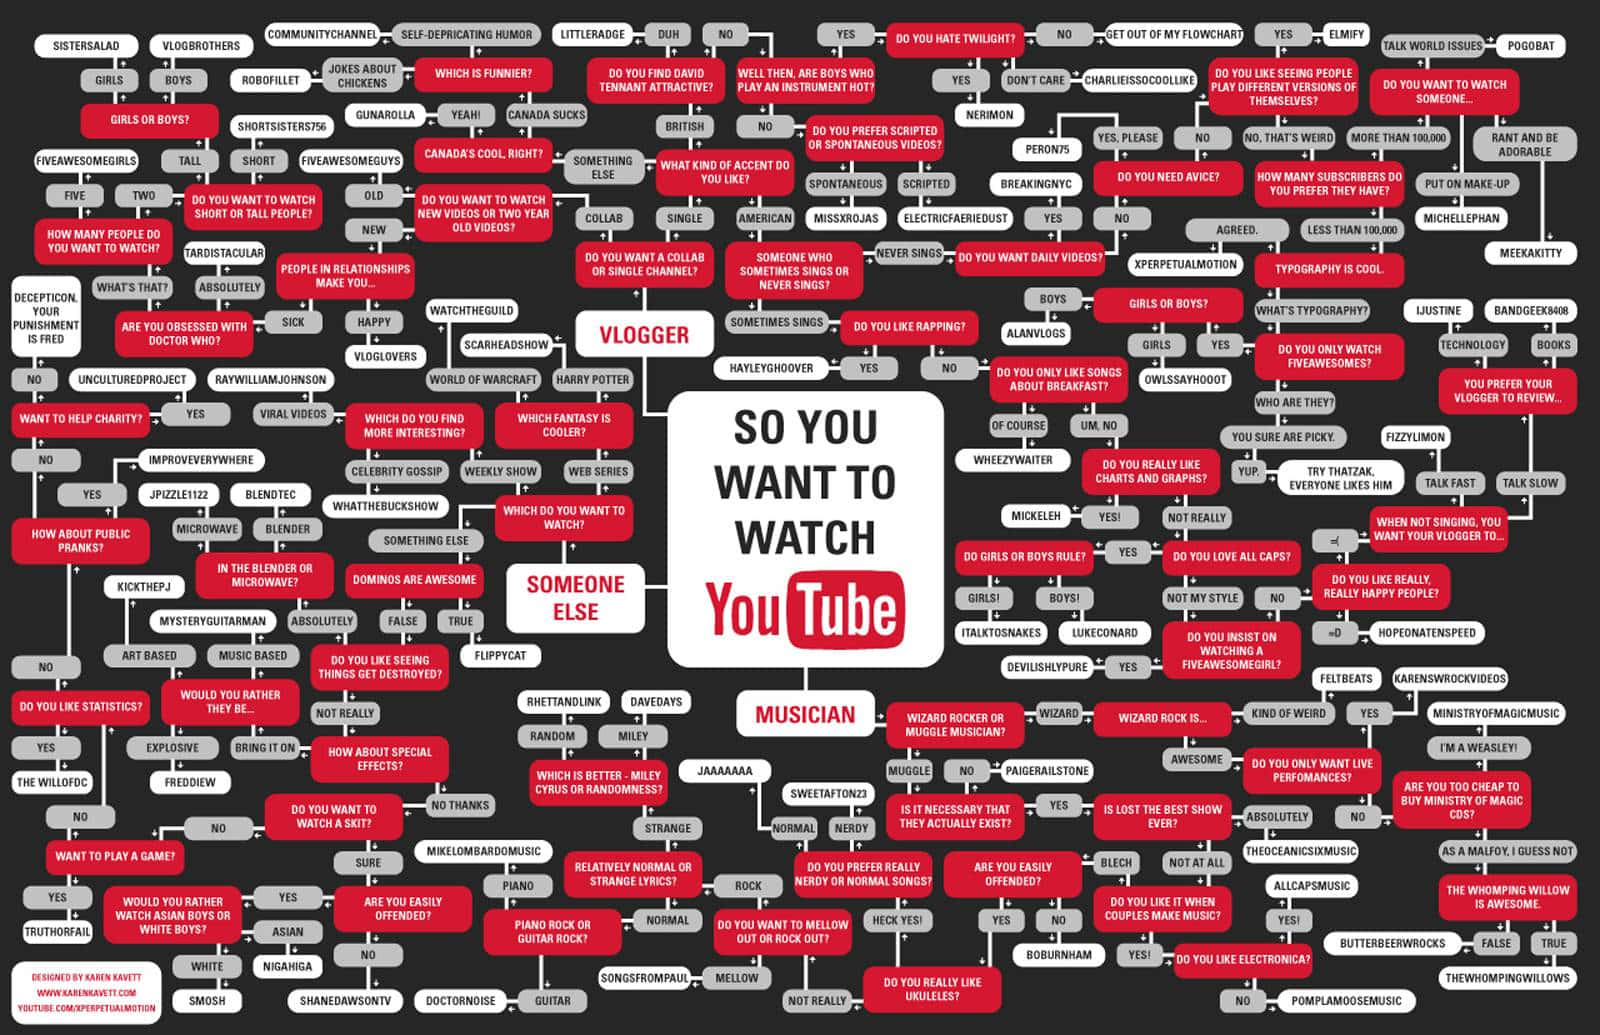 Logodi Youtube Su Sfondo Scuro.